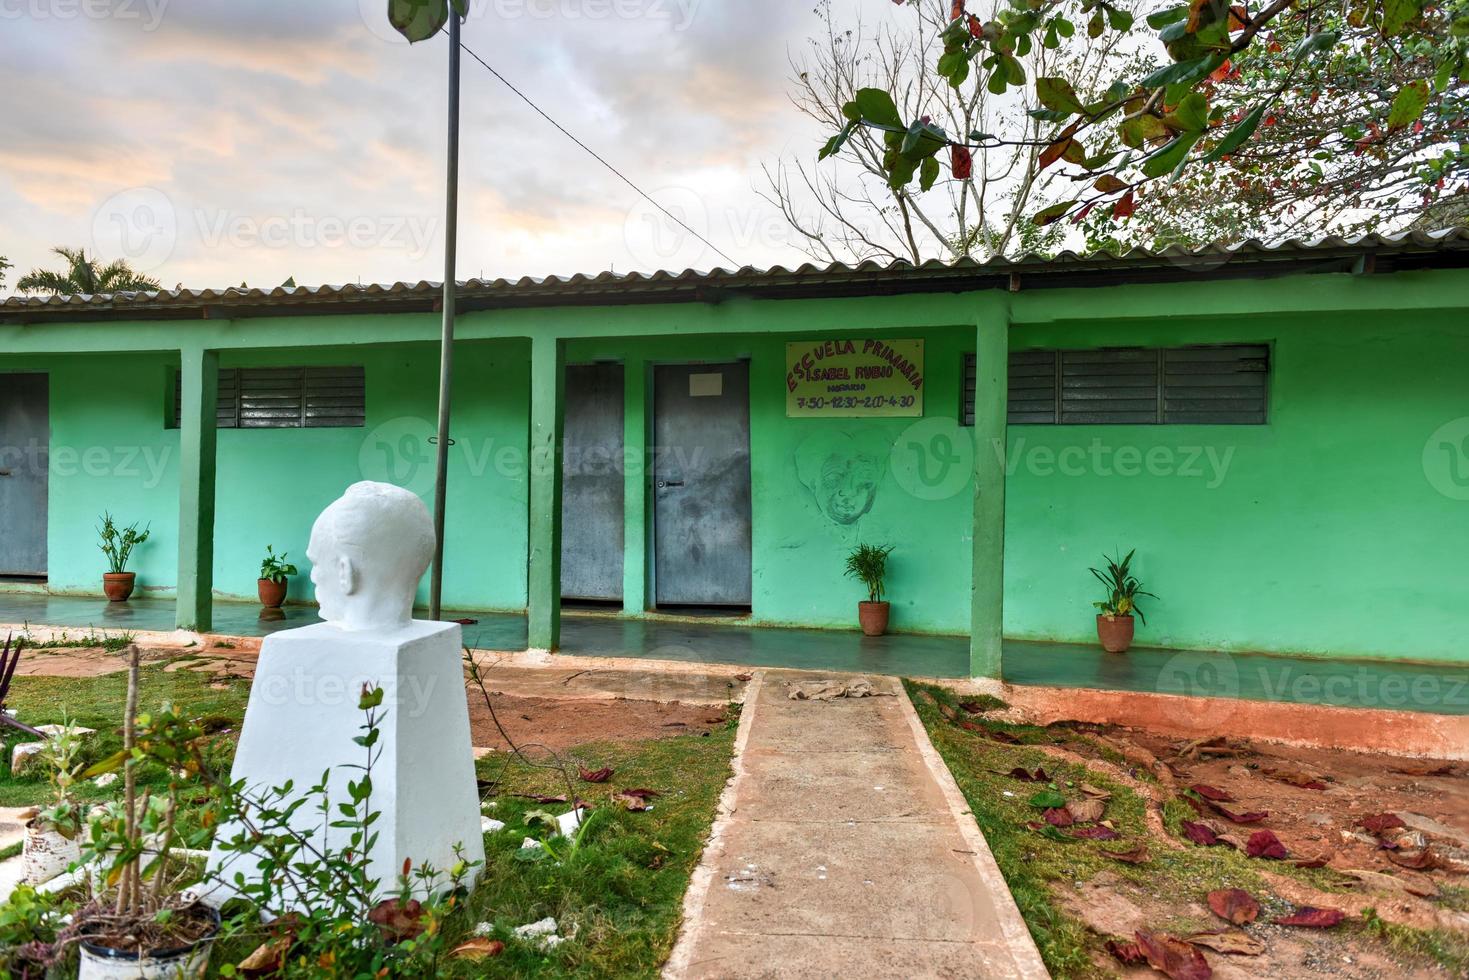 Primary School building in Vinales, Cuba with a bust of Jose de Marti. photo